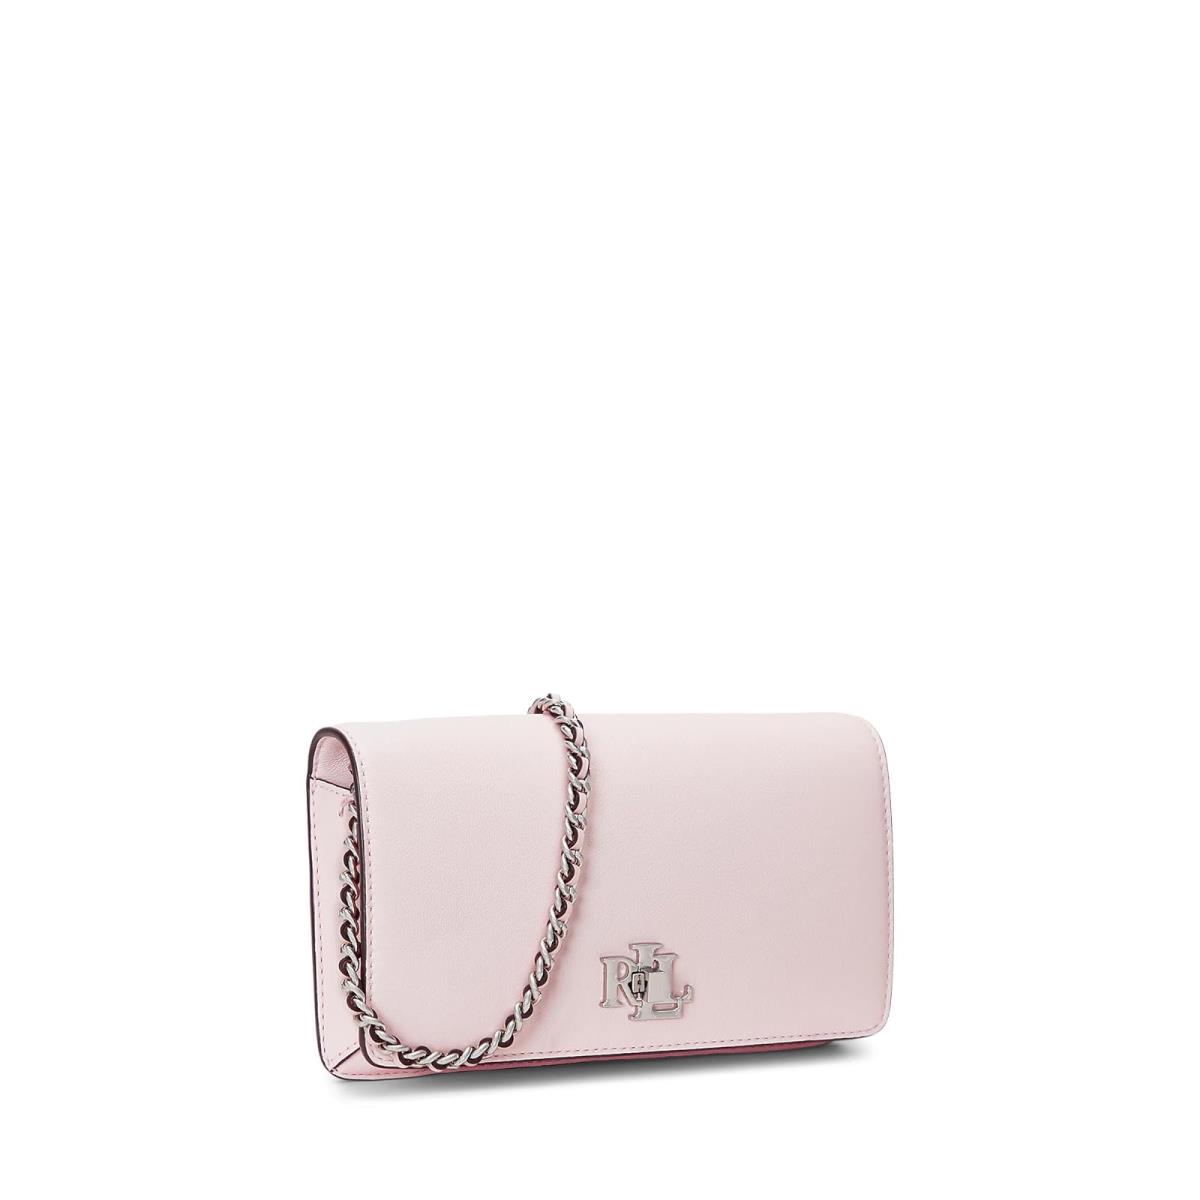 Woman`s Handbags Lauren Ralph Lauren Leather Crossbody Turn-lock Tech Case Pink